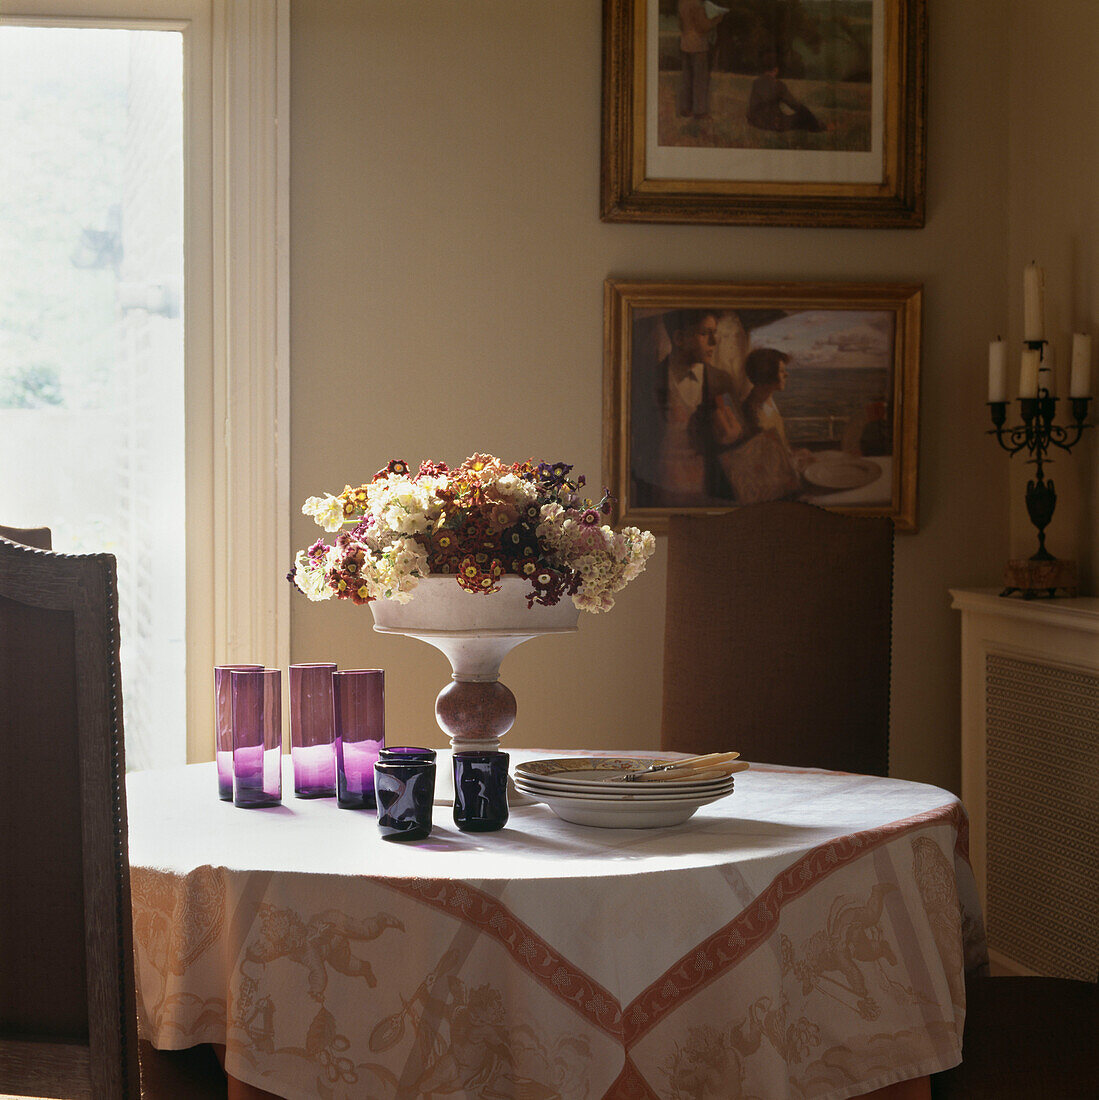 Esstisch mit Tischtuch und lilafarbenen Gläsern und Tafelaufsatz mit Aurikularblumen neben dem Fenster